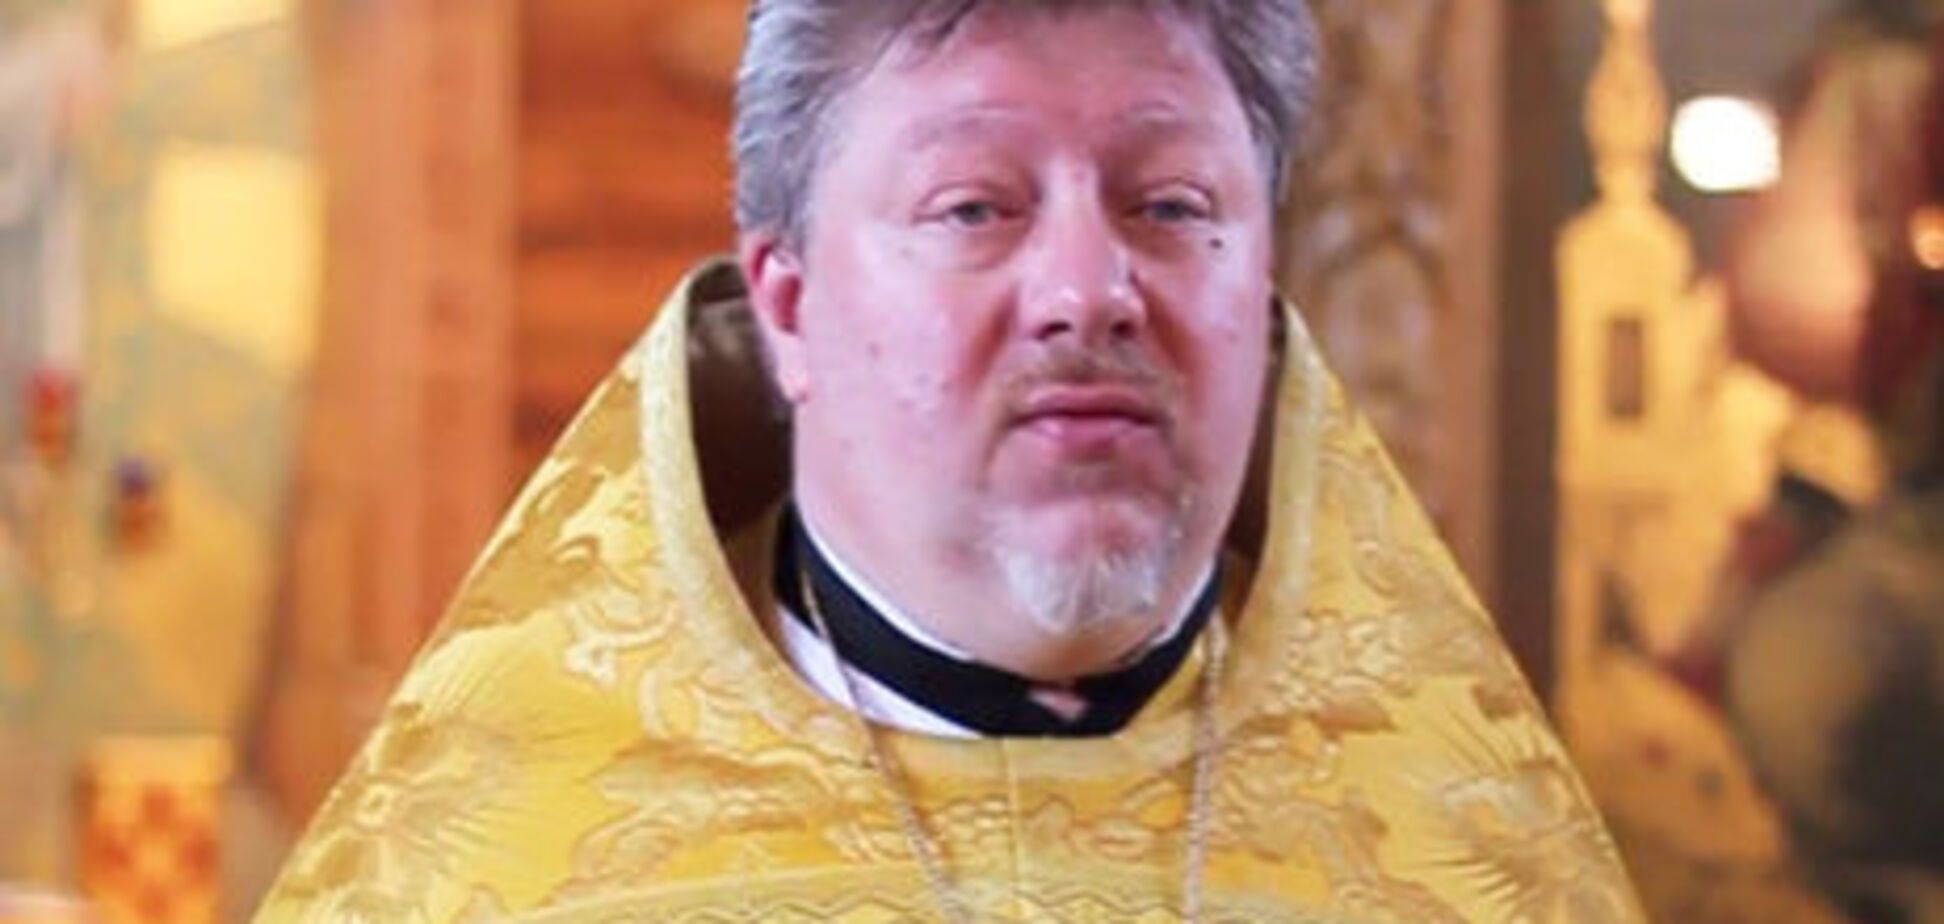 Спевшего 'Мурку' священника изгнали из Москвы в Приднестровье